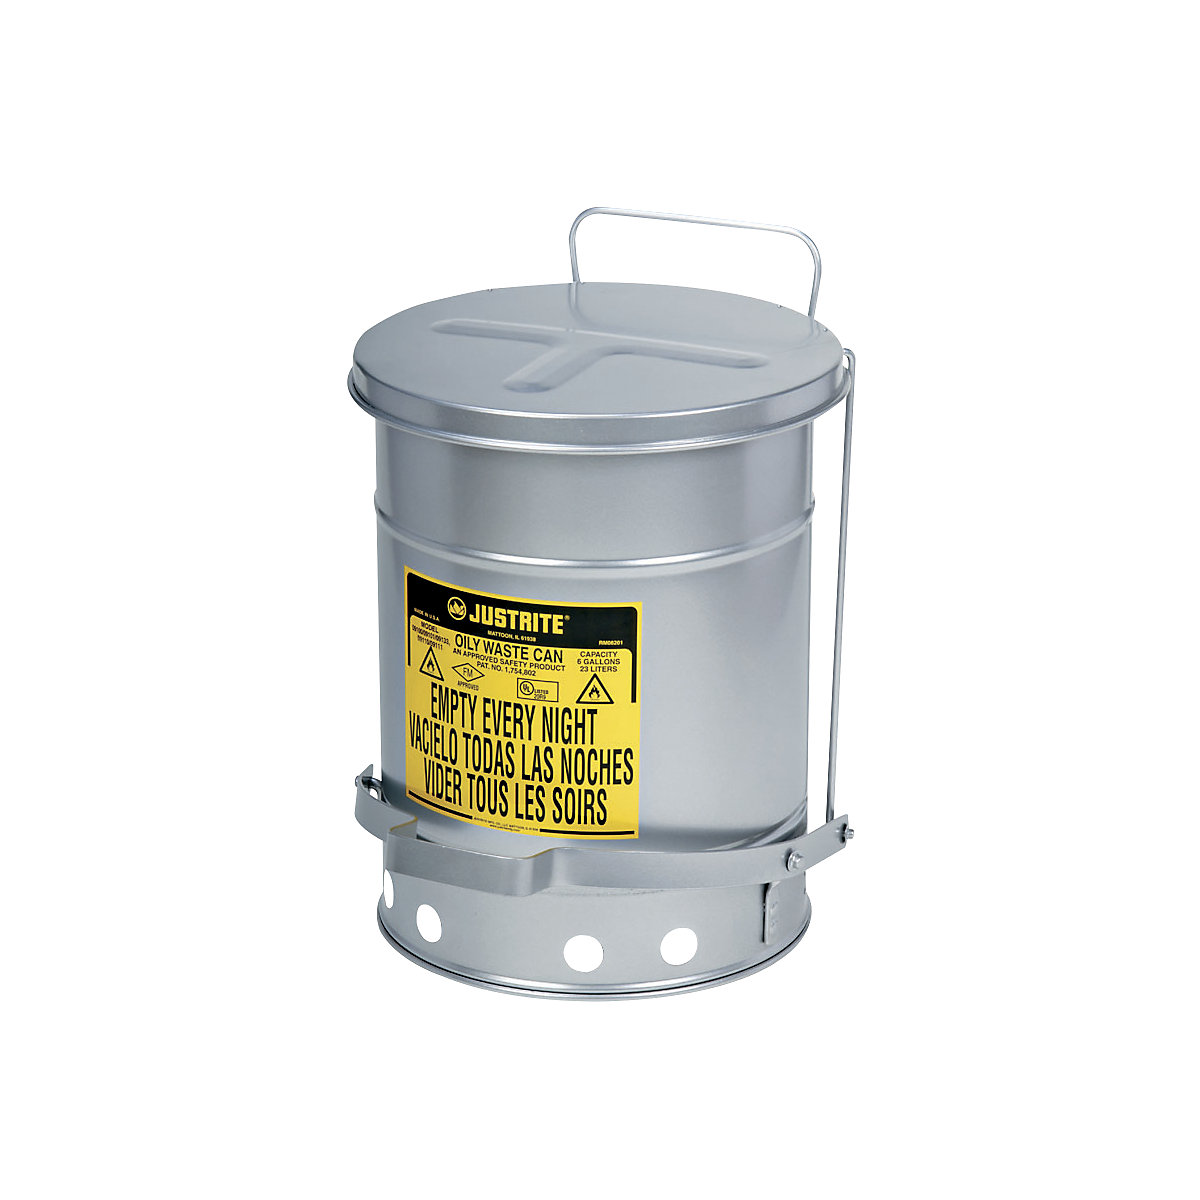 Varnostne posode za odpadke SoundGard™, z zmanjšanim hrupom – Justrite, zapiranje pokrova dušeno in tiho, srebrno lakiranje, prostornina 34 l-7